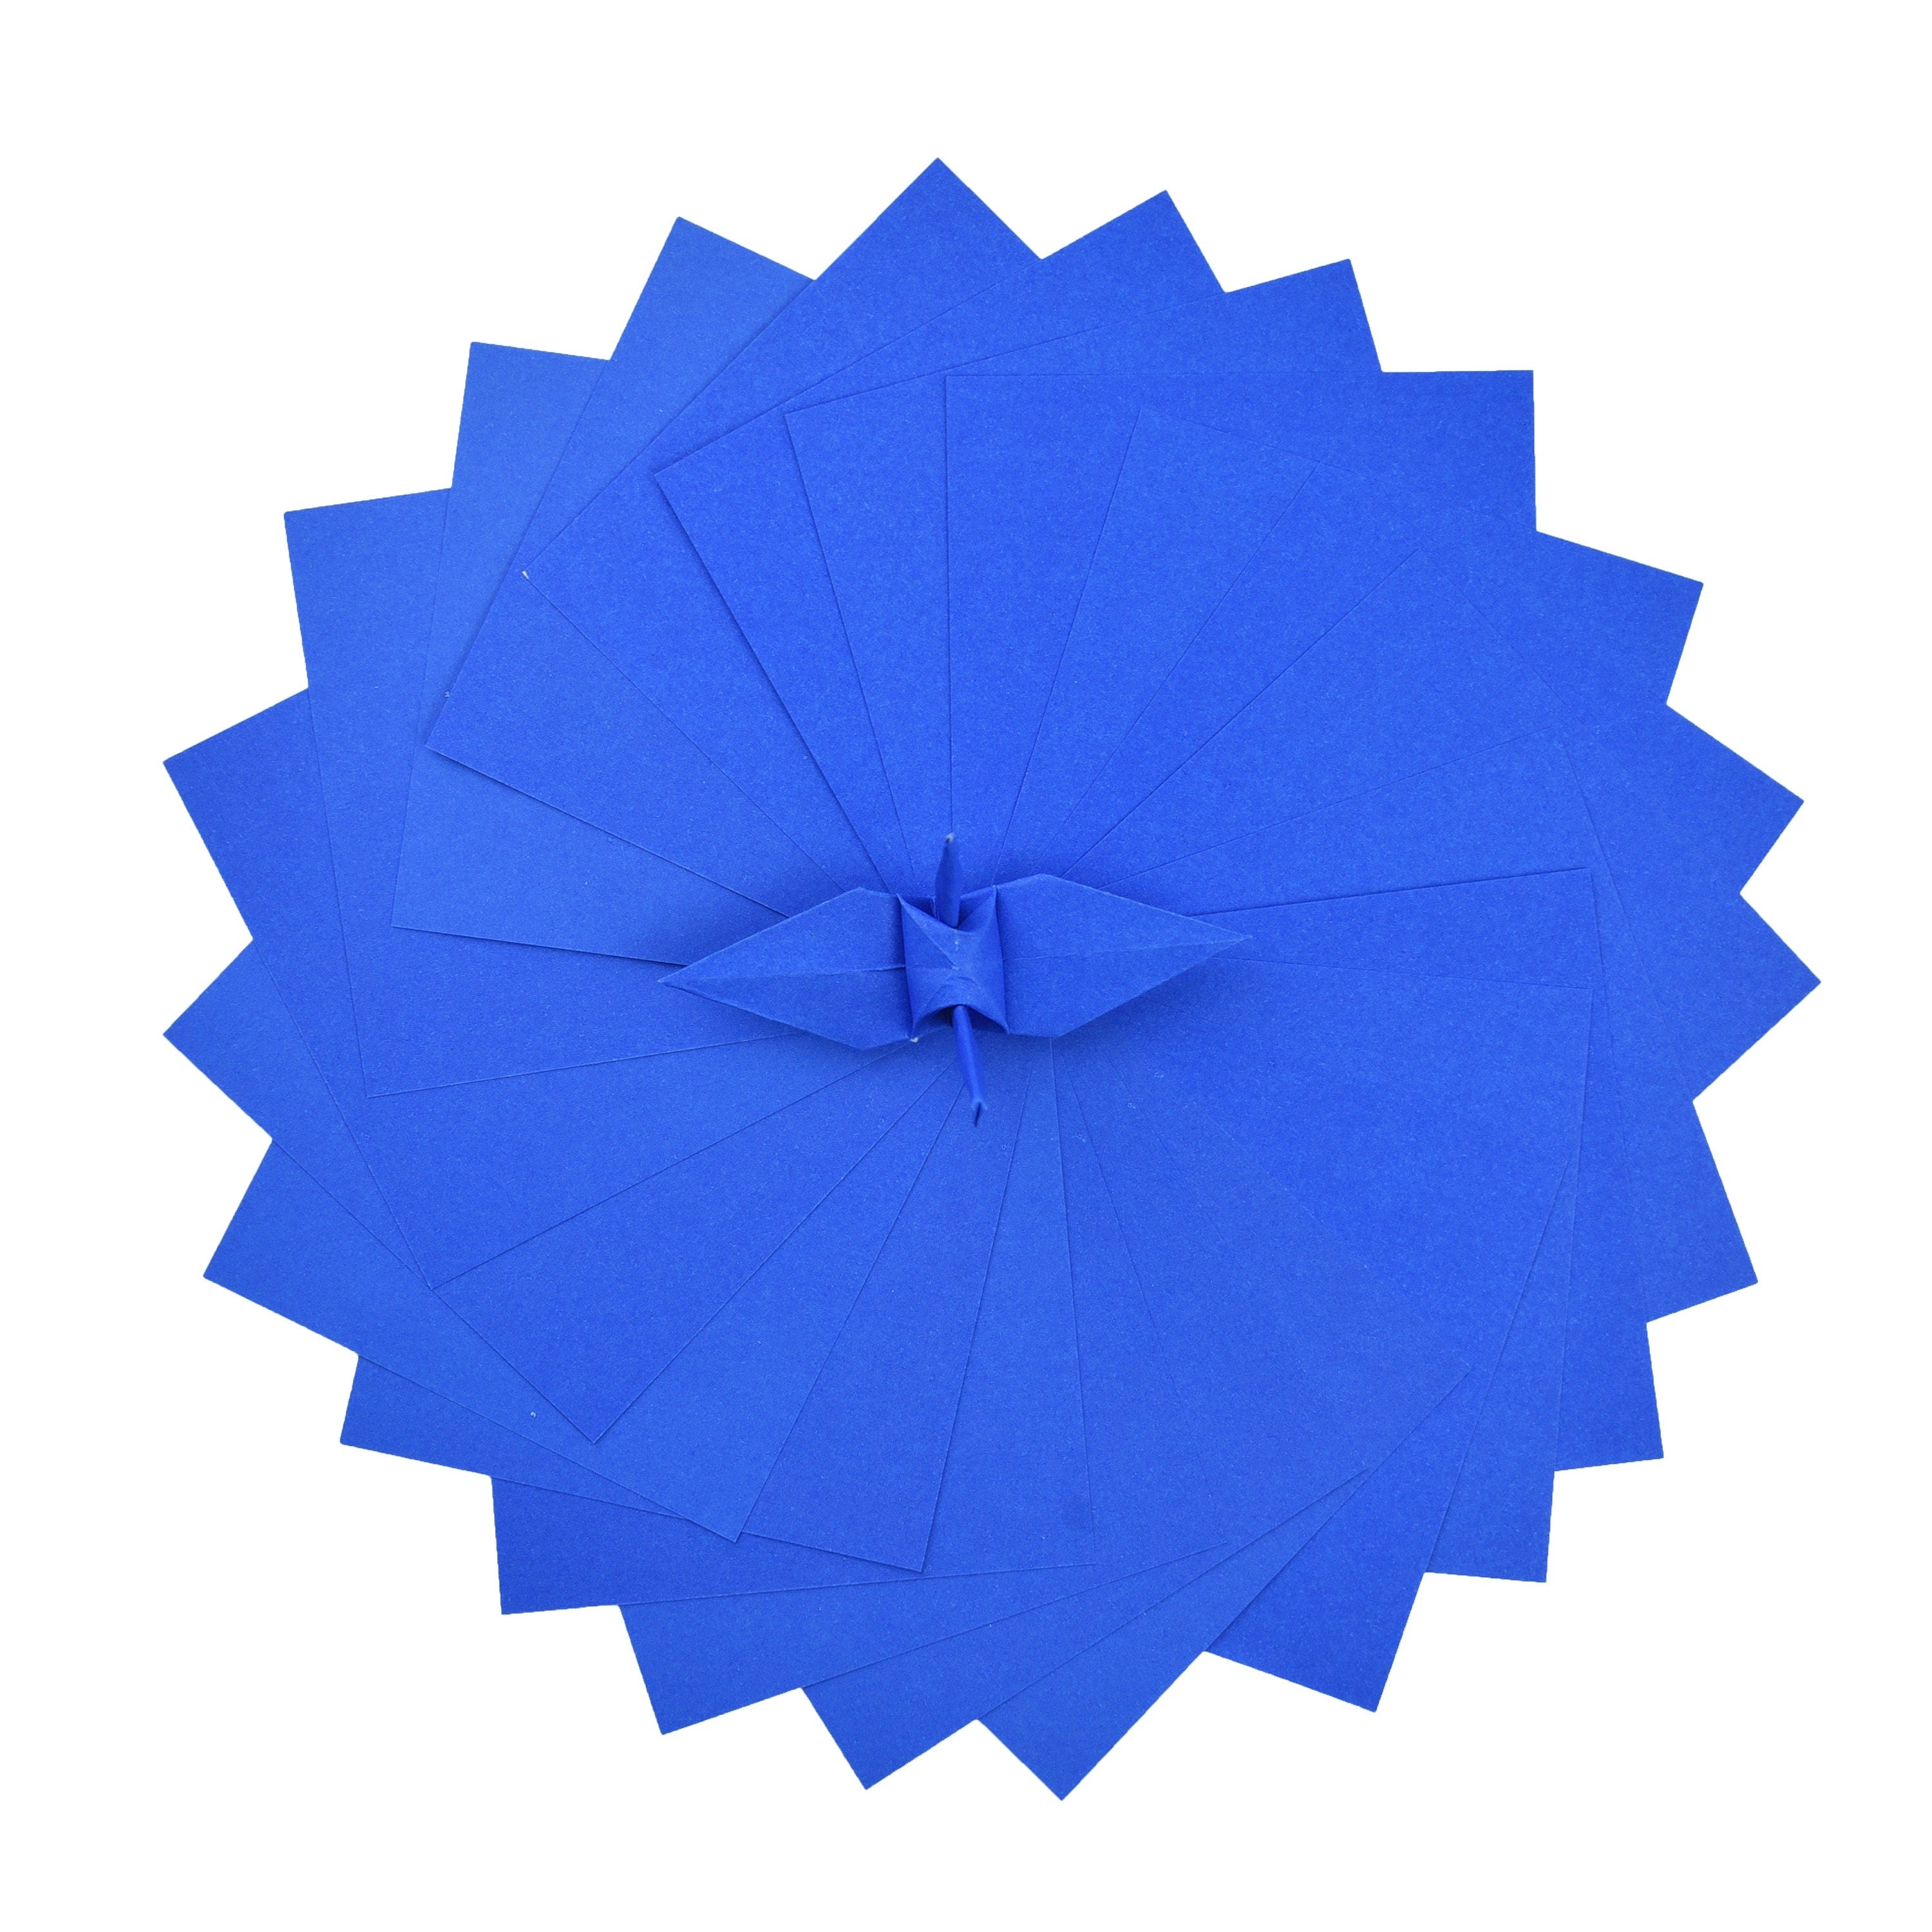 100 hojas de papel de origami morado - 6x6 pulgadas - Paquete de papel cuadrado para plegado, grullas de origami y decoración - P08